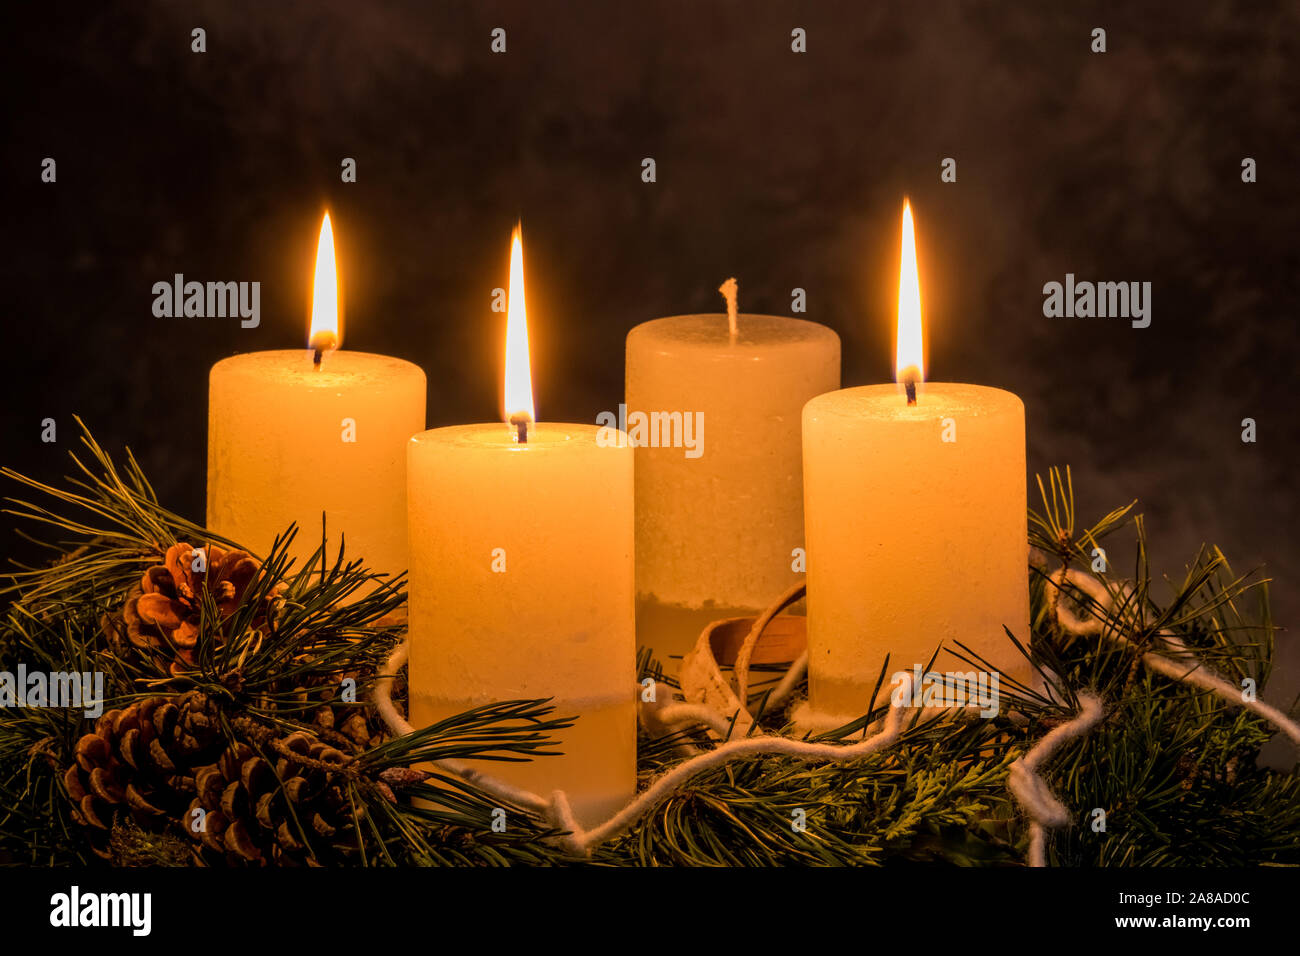 Ein Adventskranz zu Weihnachten sorgt für romatinsche Stimmung in der stillen Avvento Zeit, 3. Avvento, drei brennende Kerzen, Foto Stock